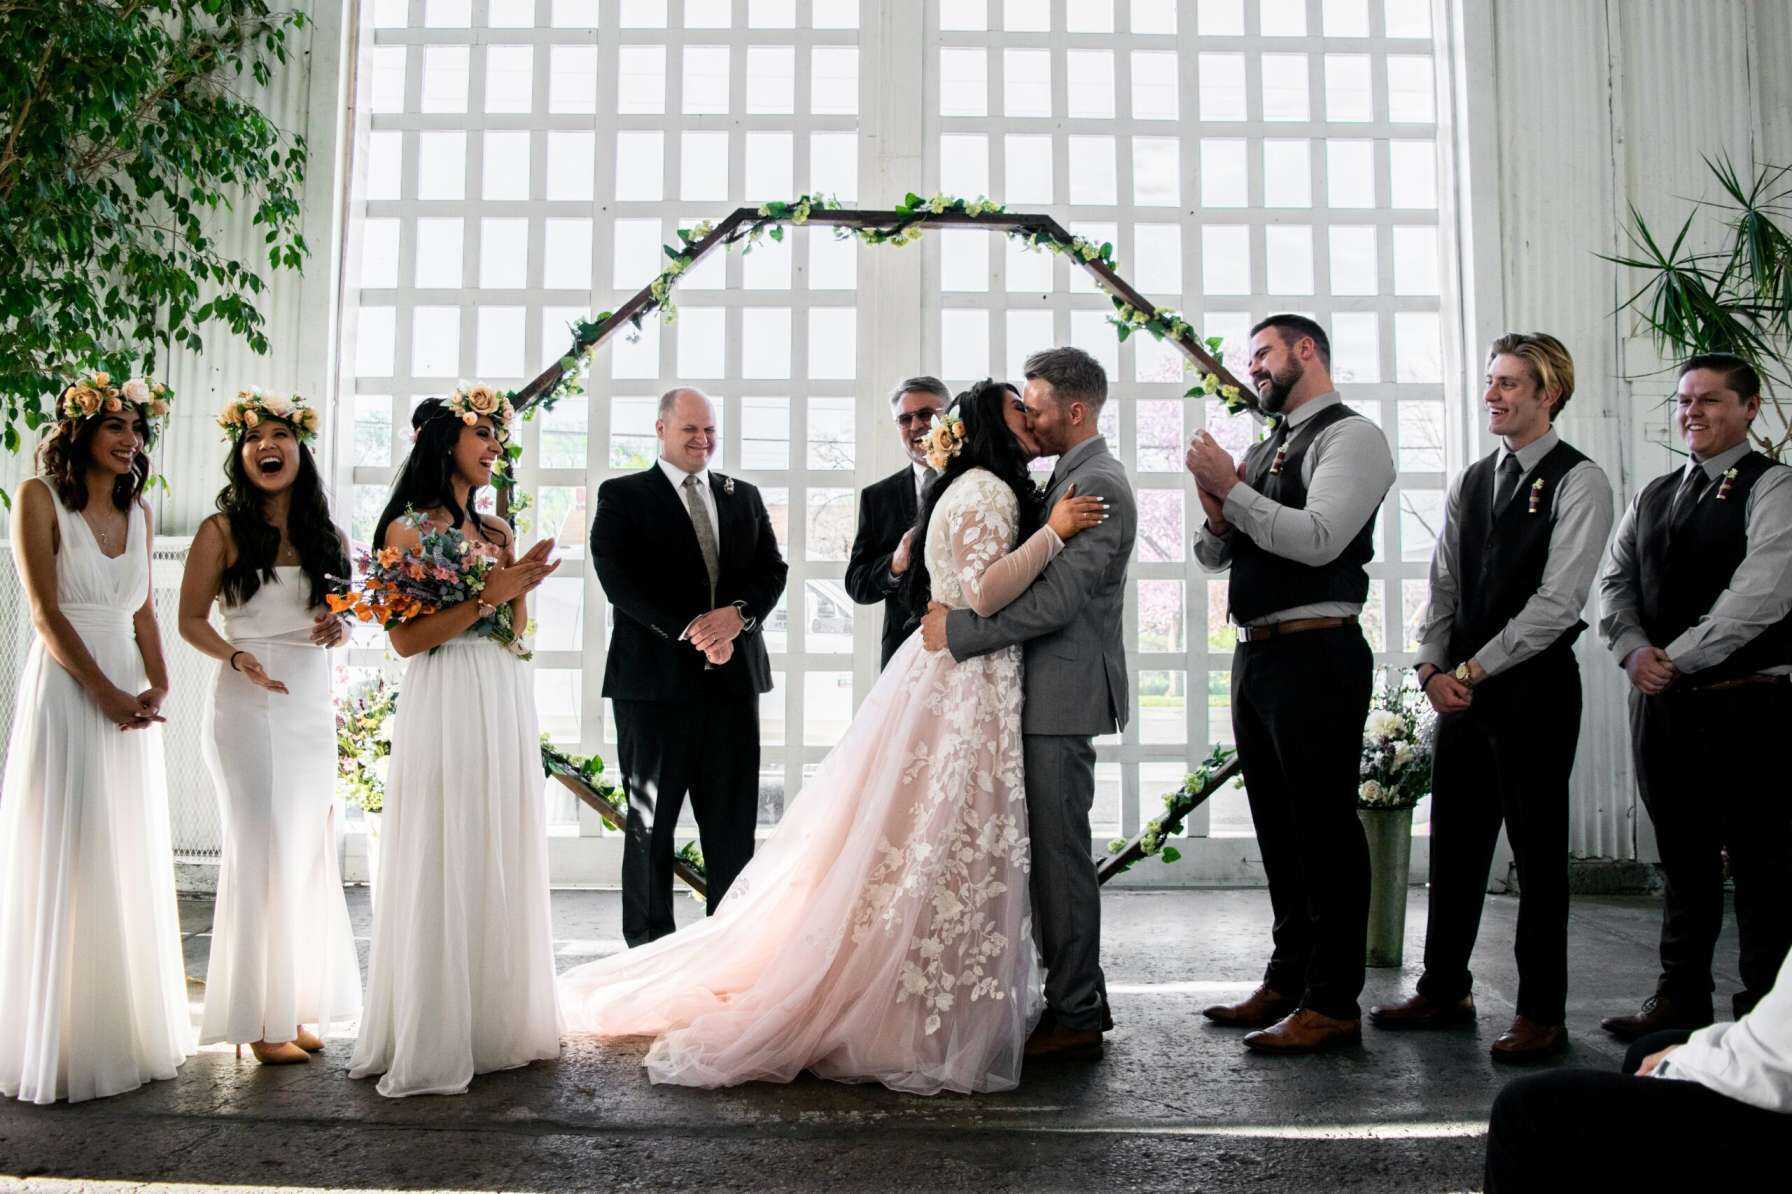 fun image of wedding